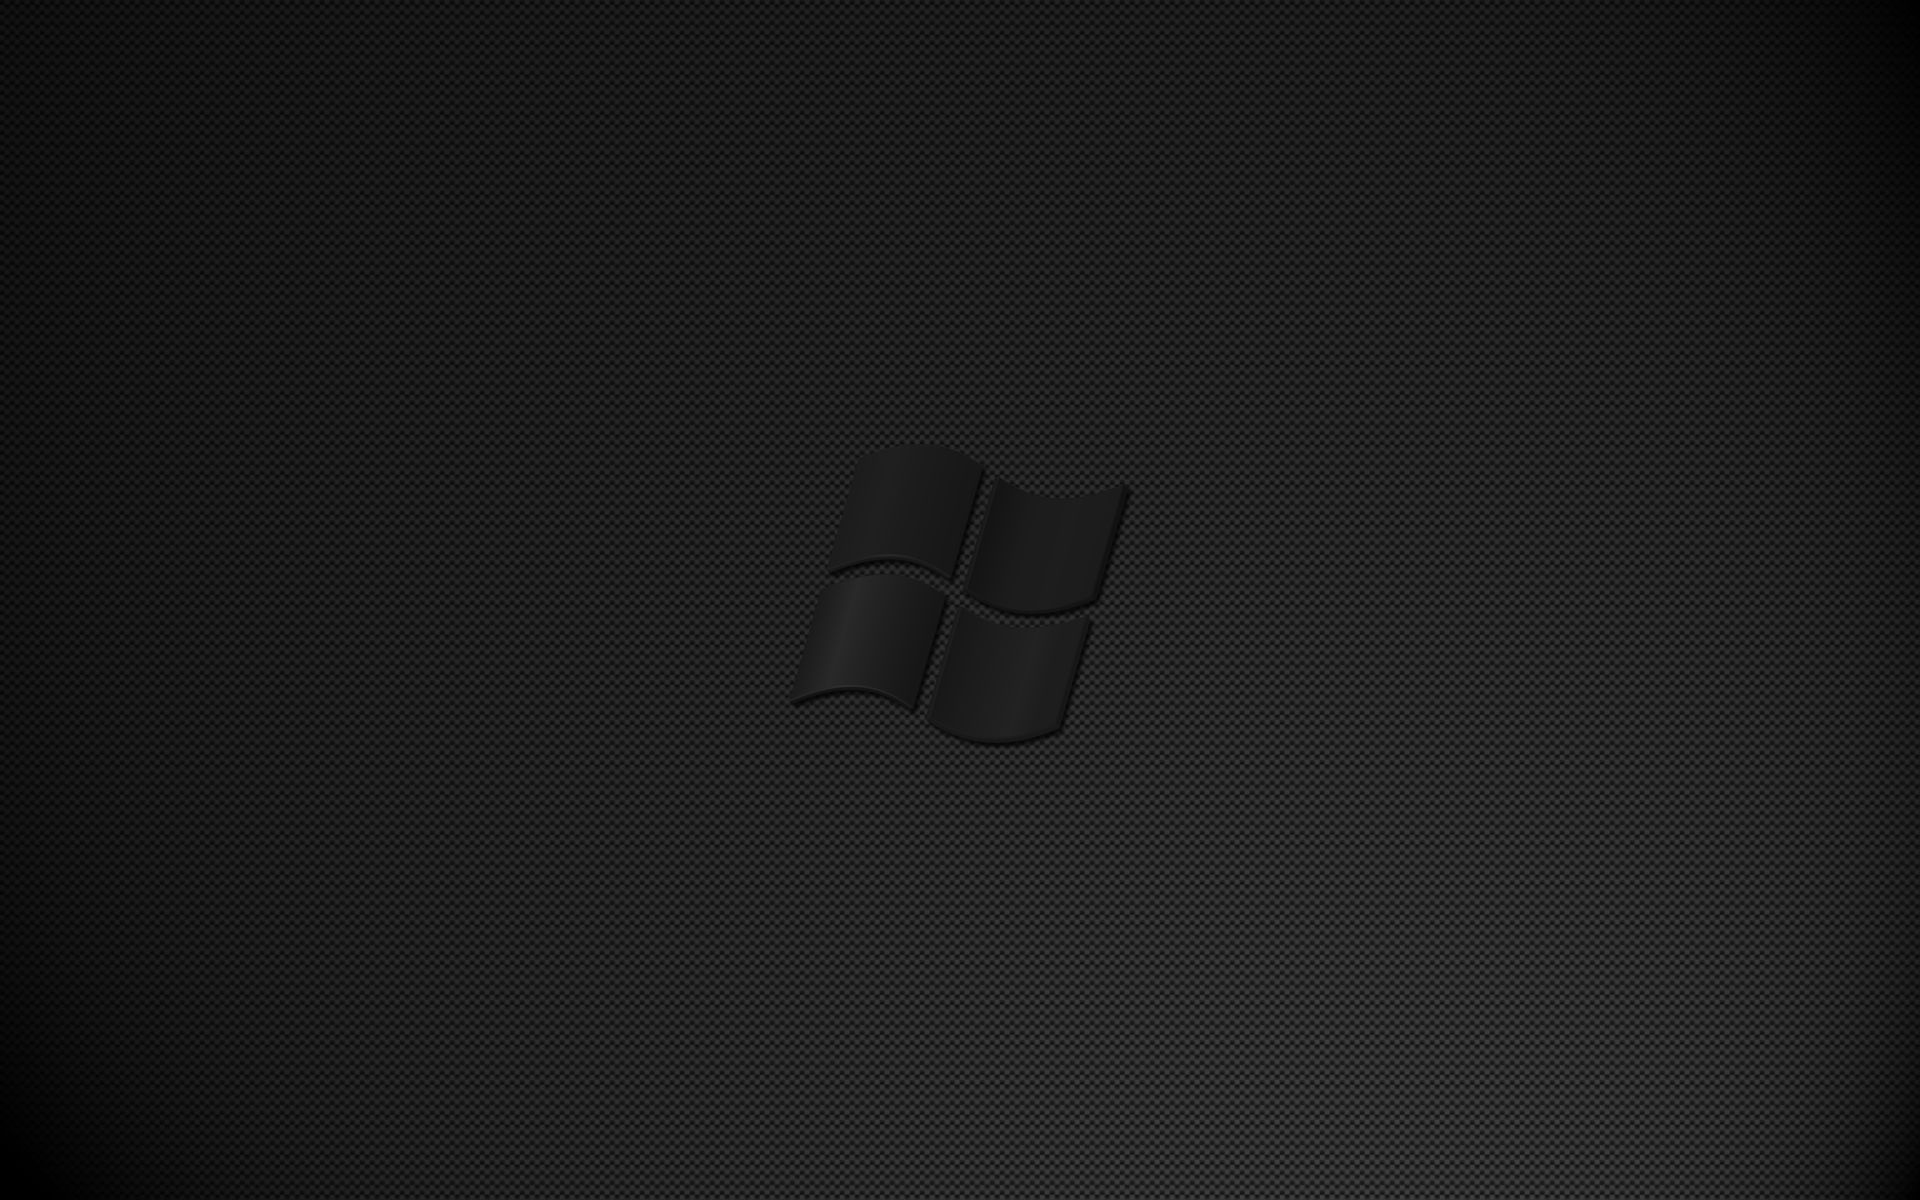 Bạn là một người yêu thích phong cách tối giản? Hãy cập nhật cho máy tính của bạn hình nền đen cho Windows Dark. Tông màu đen sẽ mang đến cảm giác bí ẩn và đầy sức hấp dẫn cho desktop của bạn.